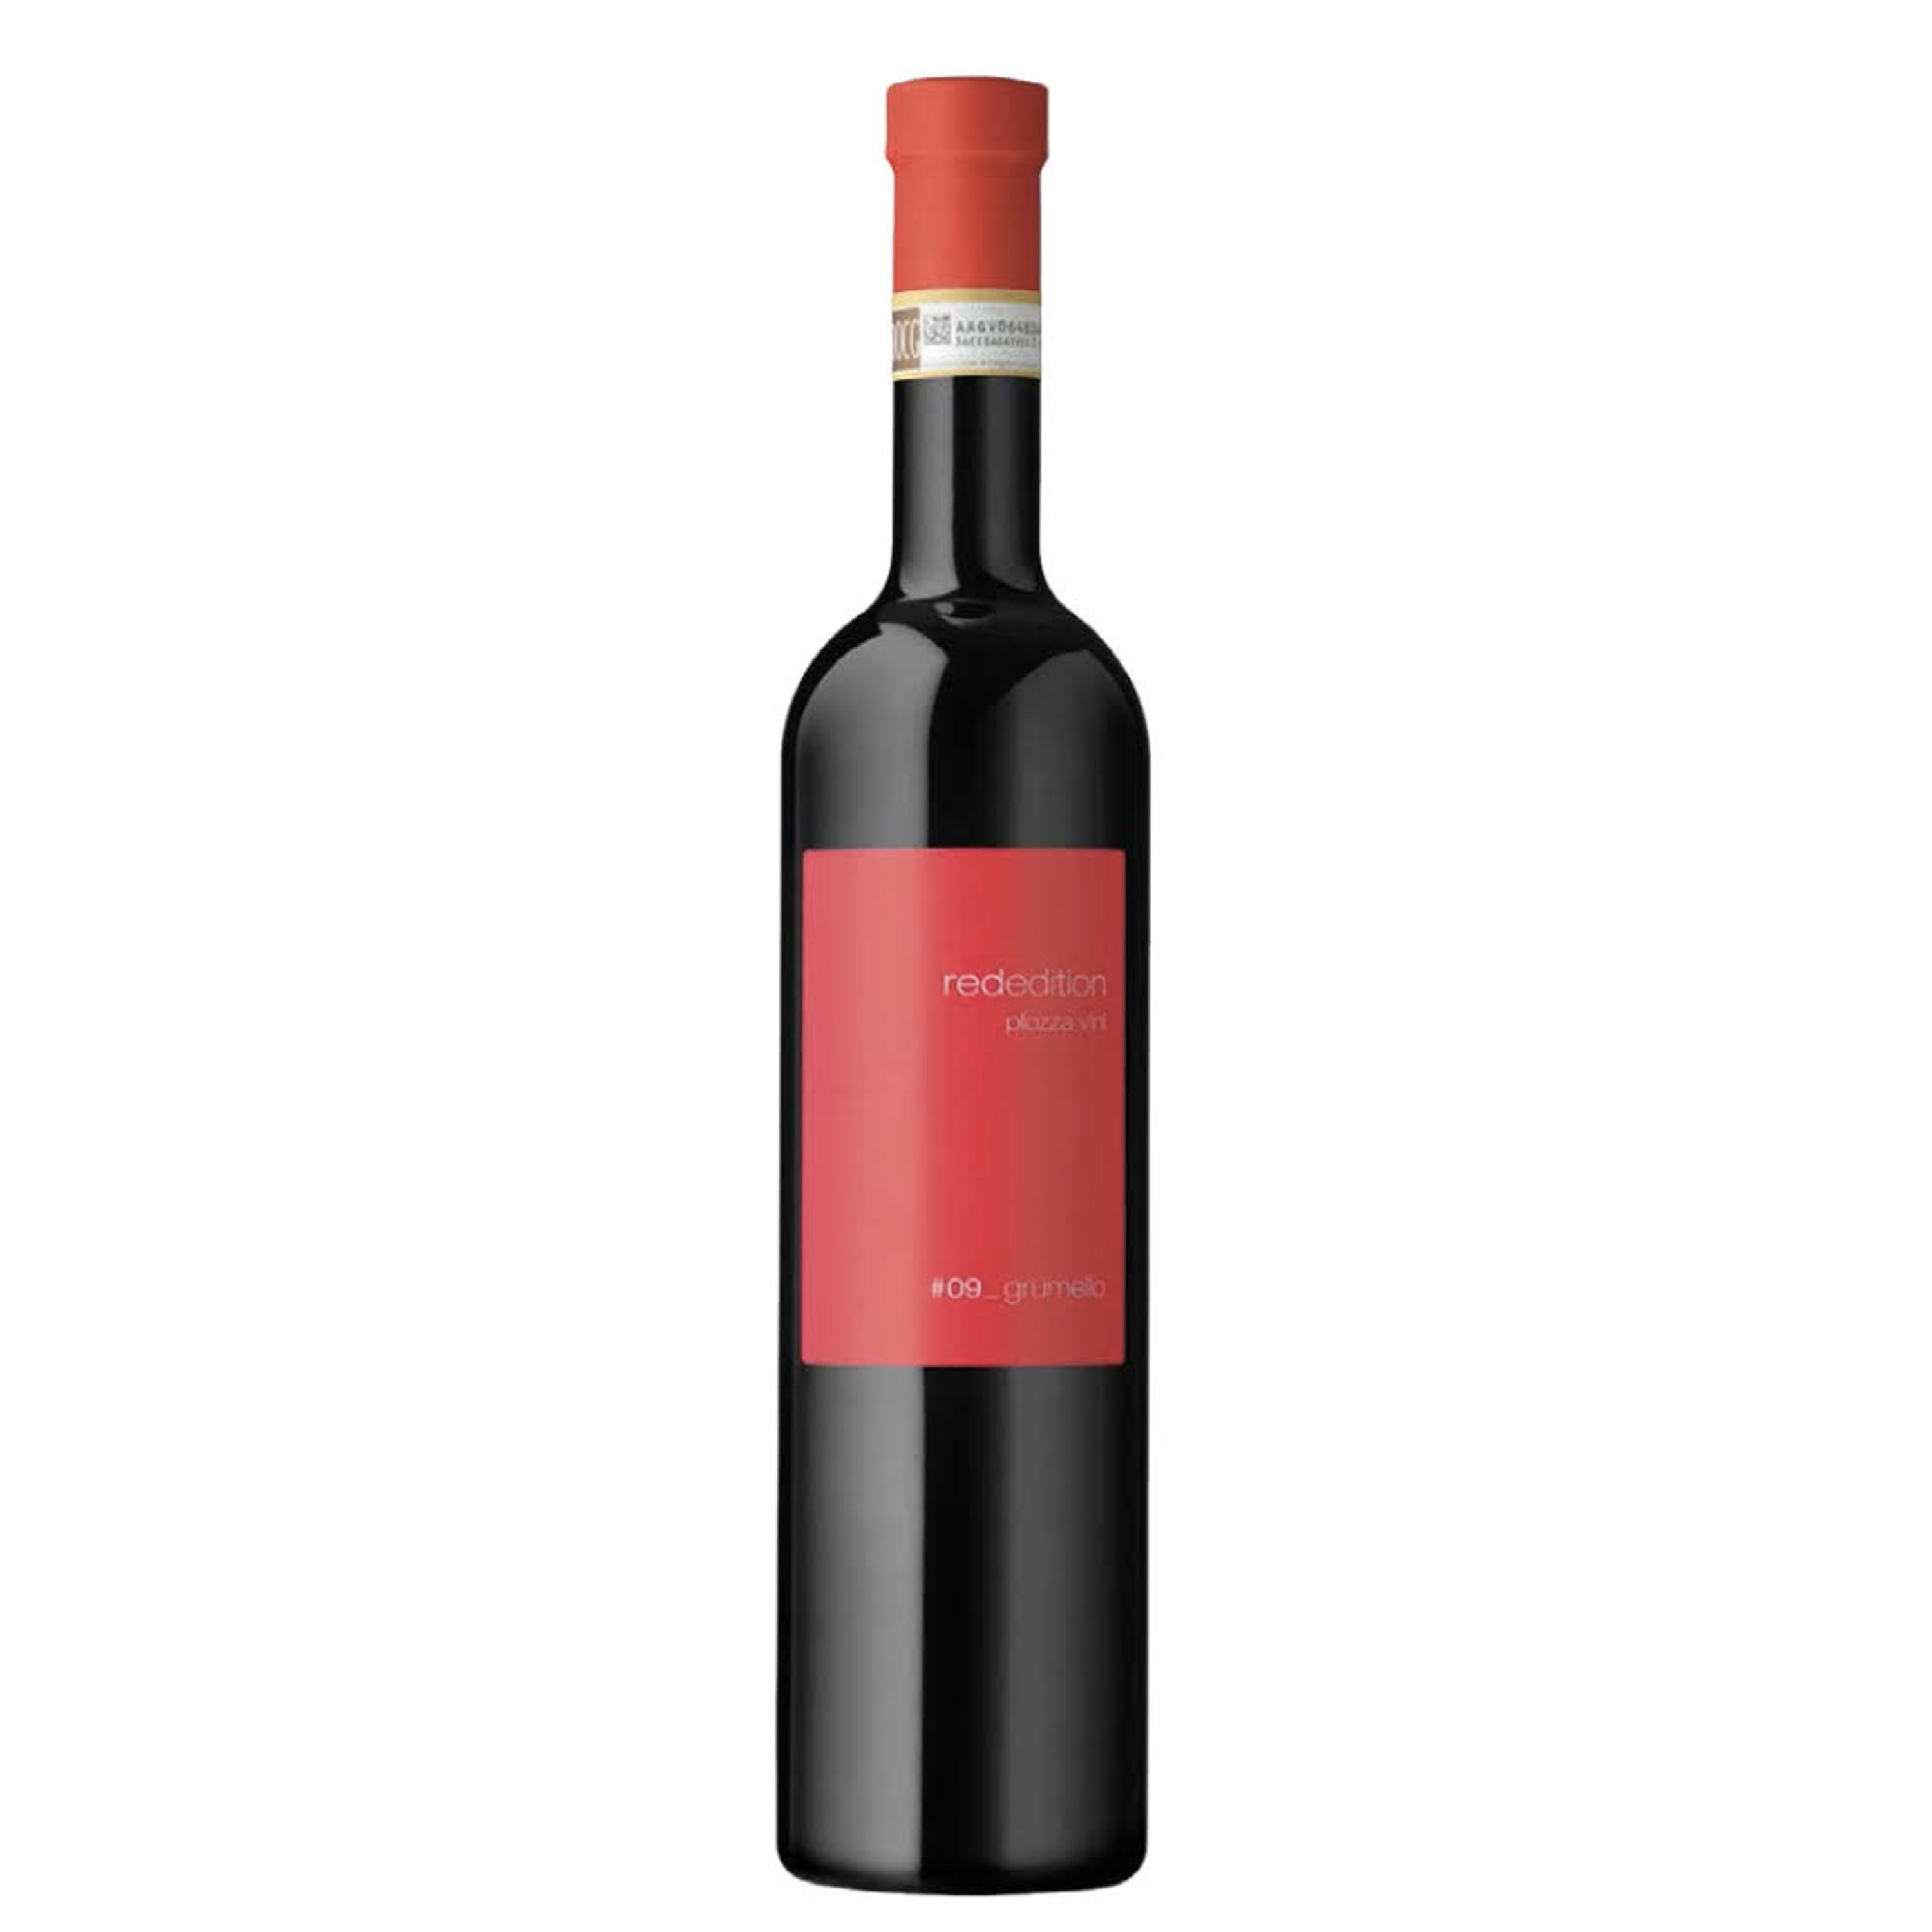 Valtellina Superiore Grumello Riserva Docg Red Edition 2015